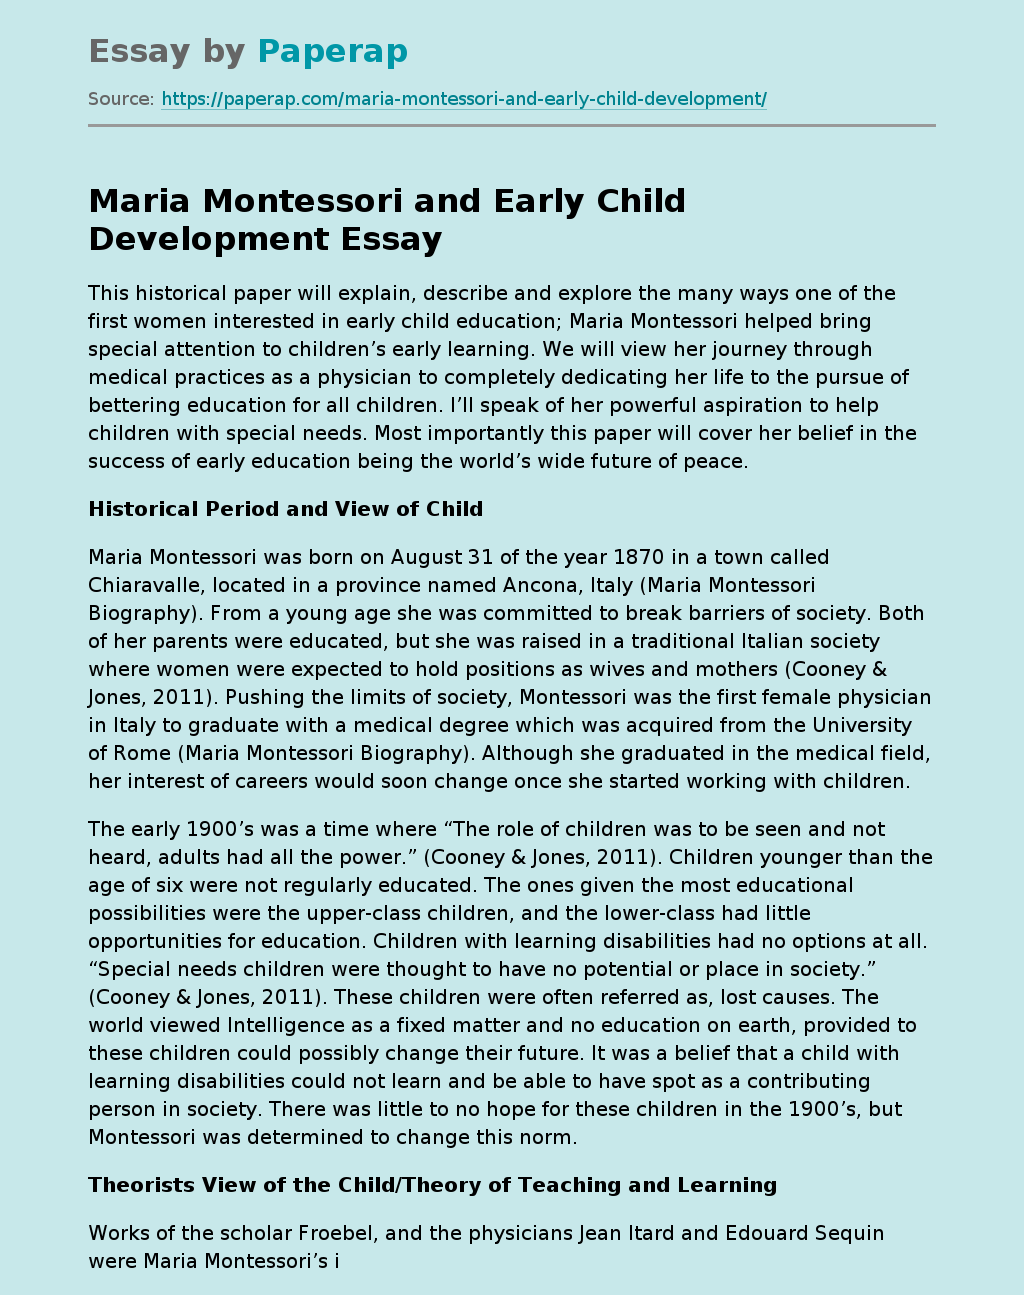 Maria Montessori and Early Child Development